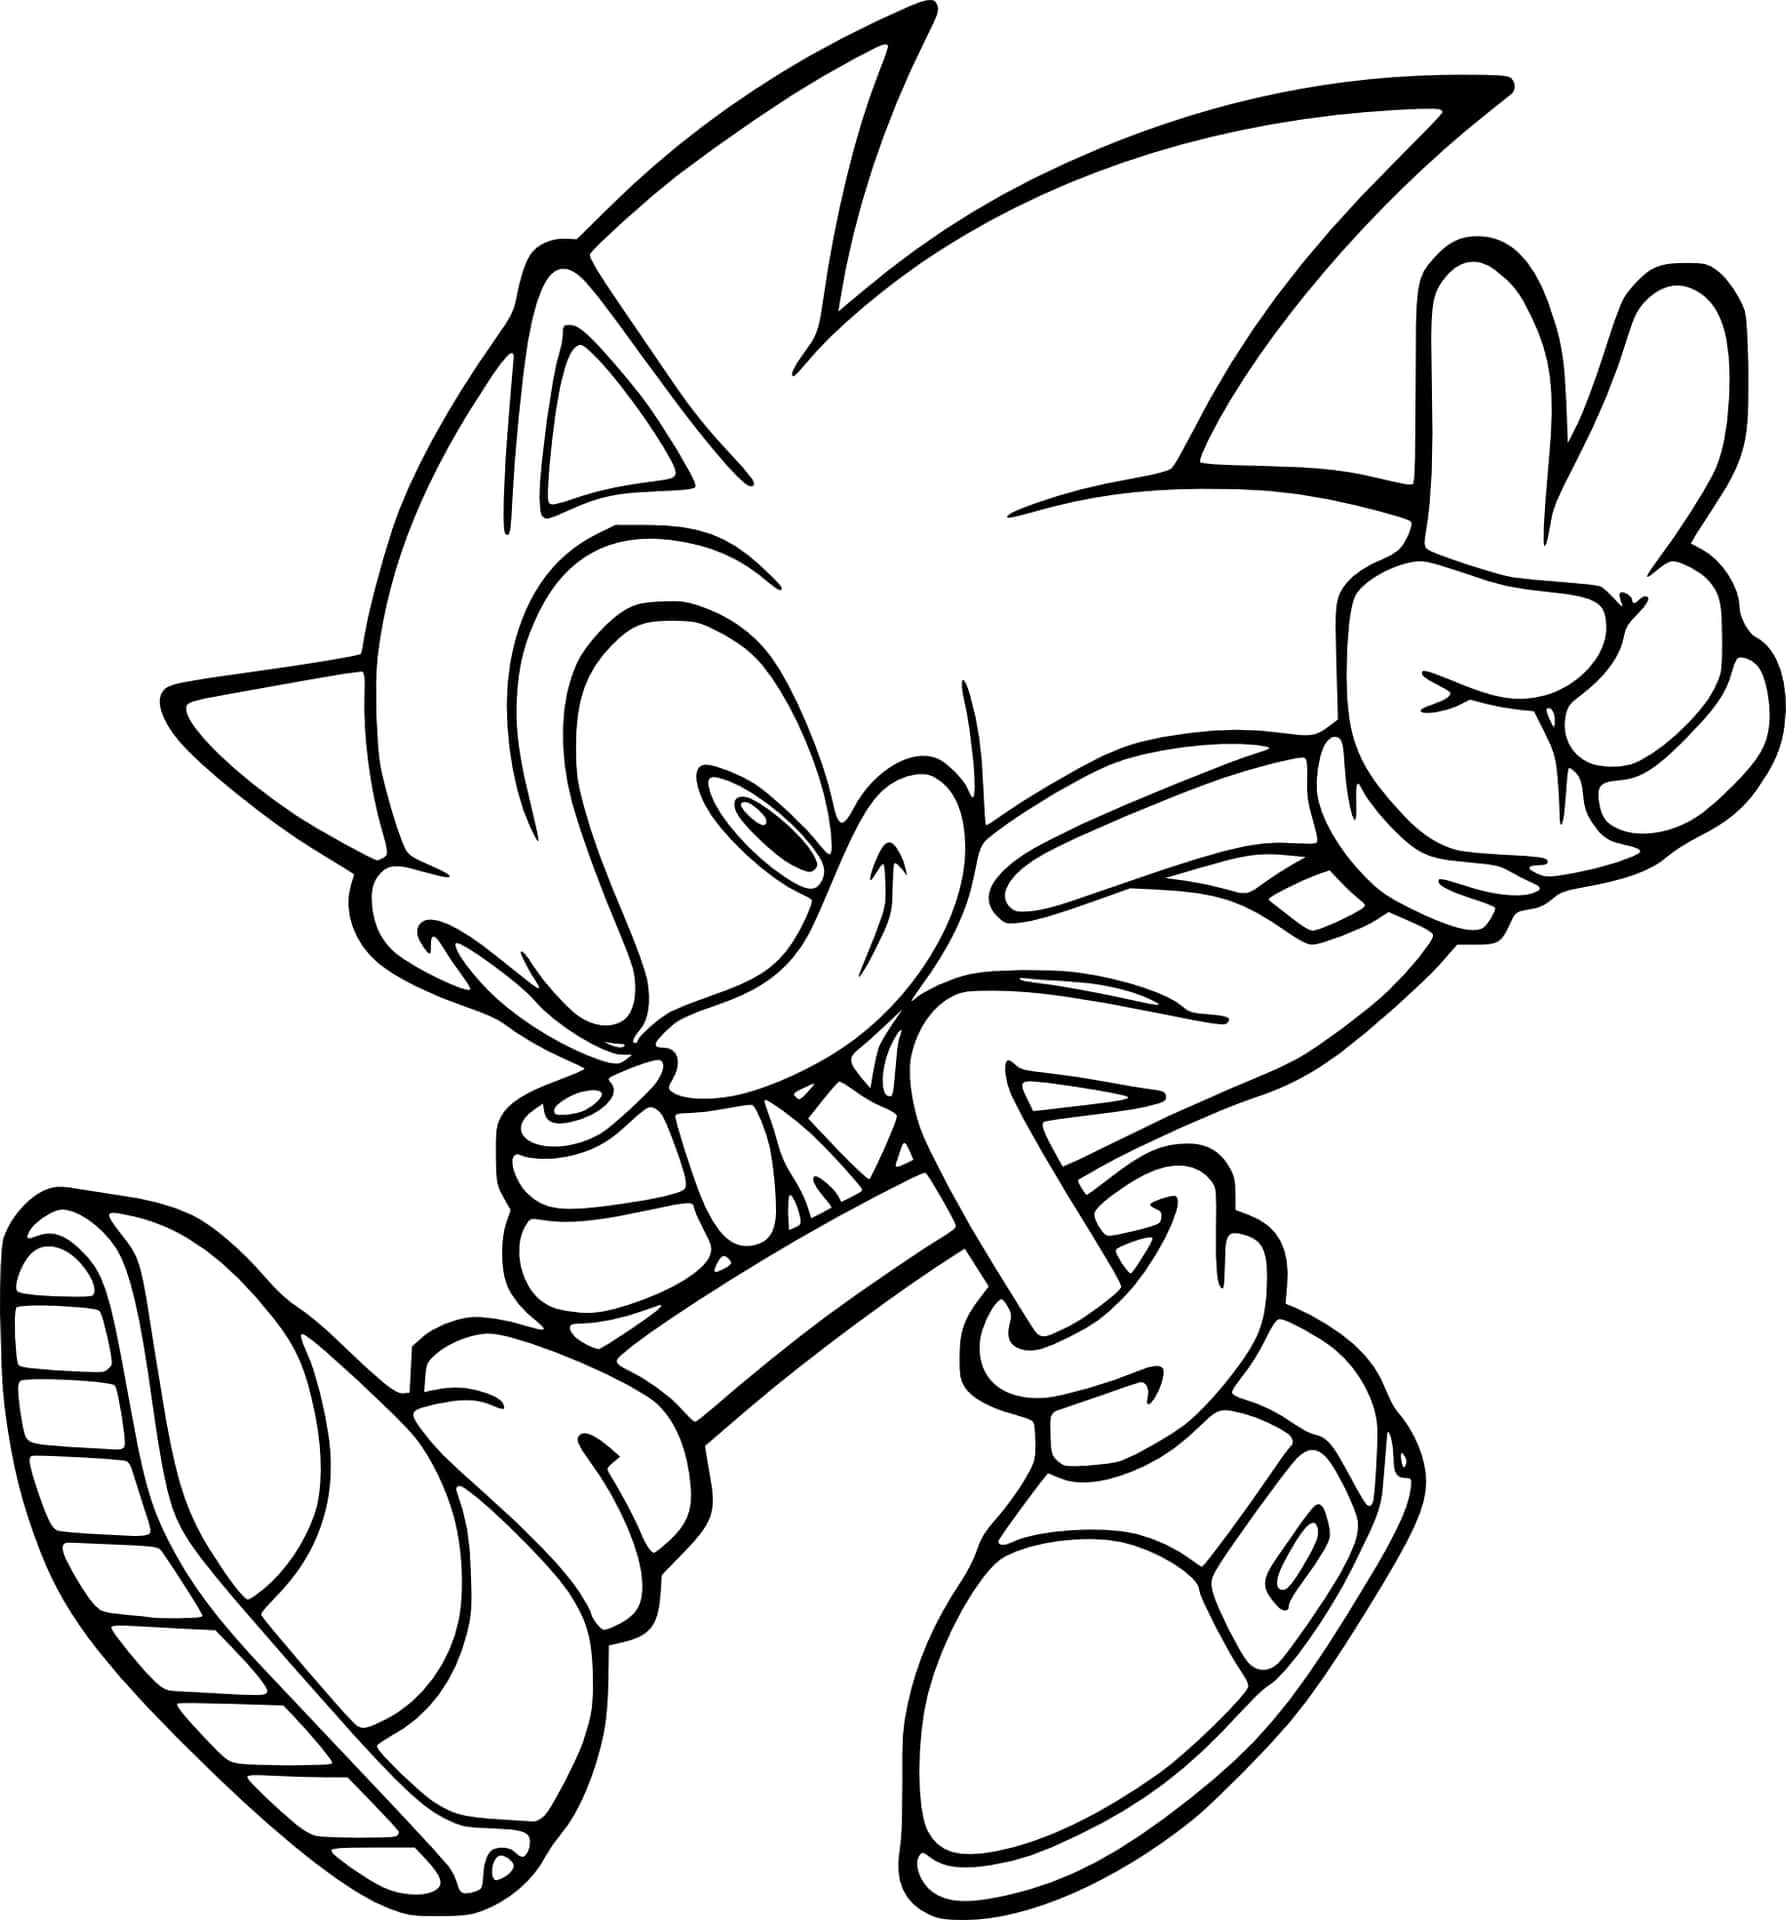 Immagineda Colorare Di Sonic Con Il Simbolo Della Pace